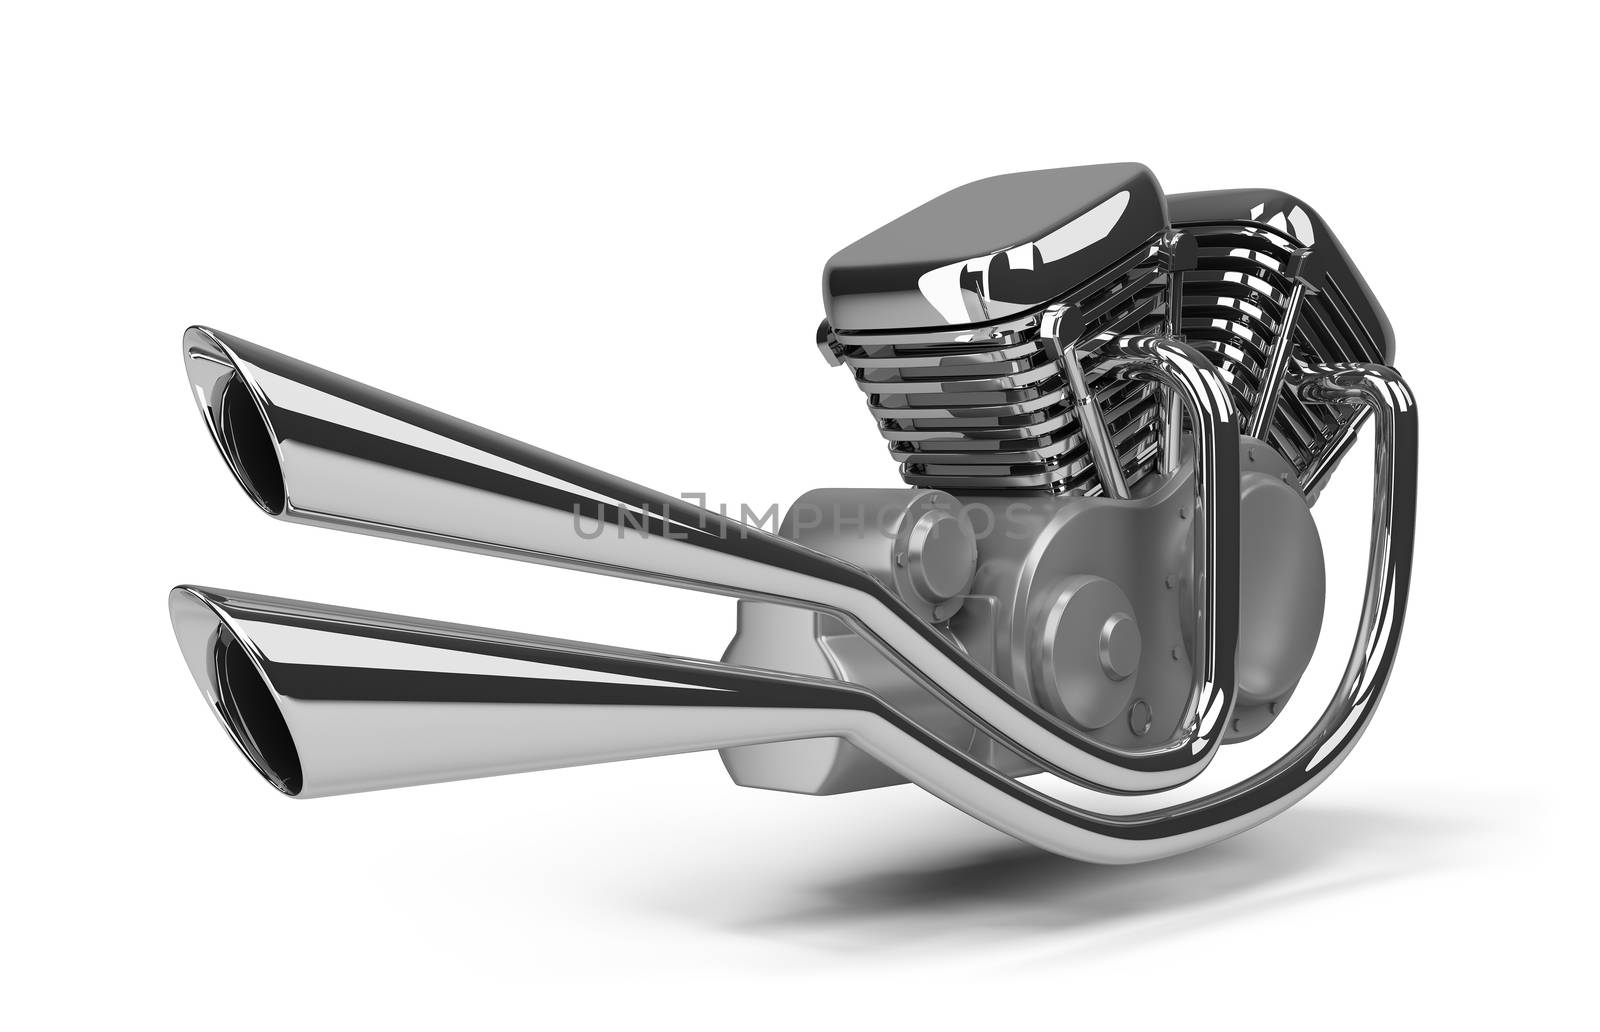 chromed motorcycle engine. 3d image. Isolated white background.